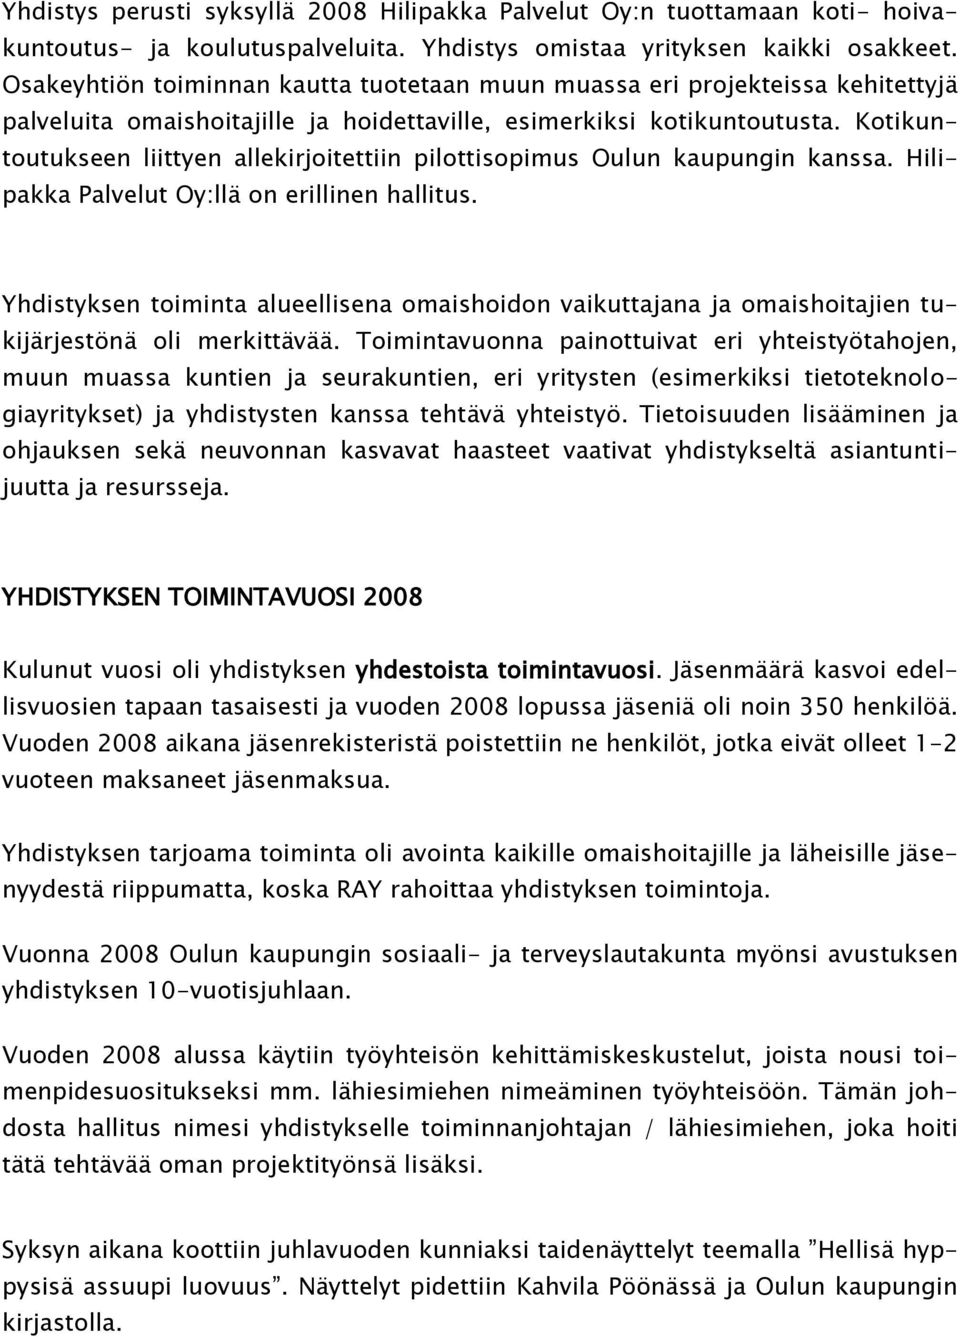 Kotikuntoutukseen liittyen allekirjoitettiin pilottisopimus Oulun kaupungin kanssa. Hilipakka Palvelut Oy:llä on erillinen hallitus.